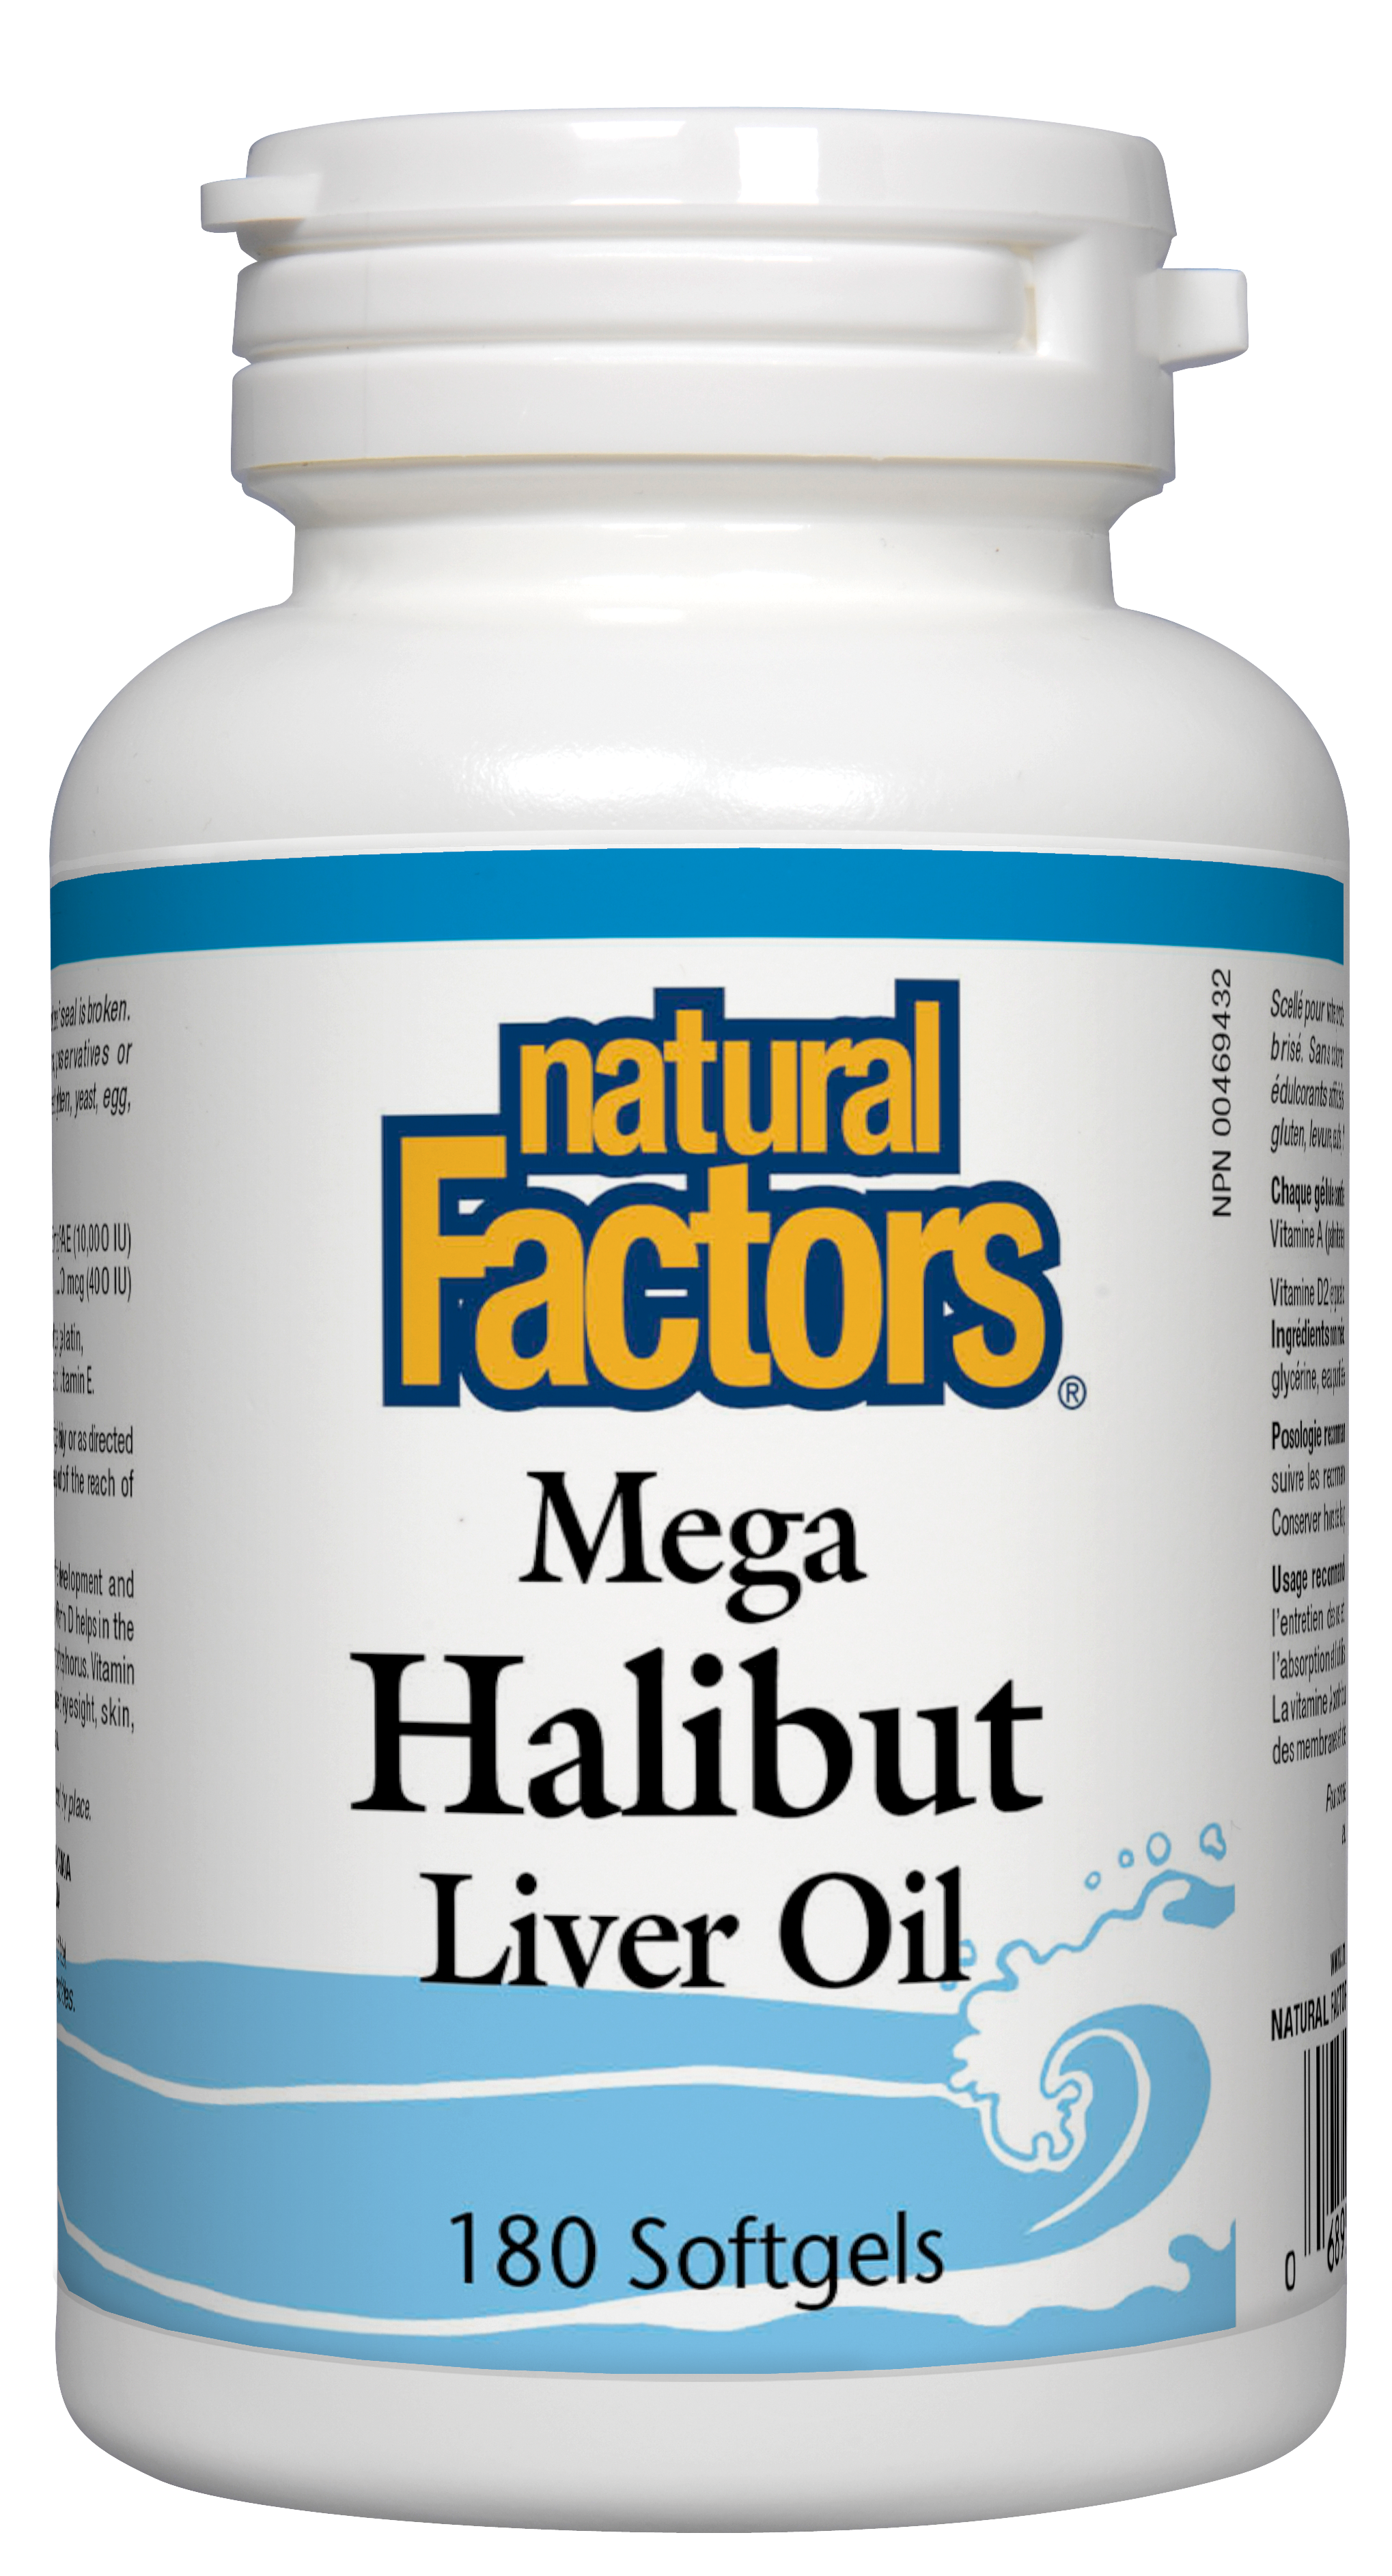 Natural Factors Mega Halibut Liver Oil 180 Softgels